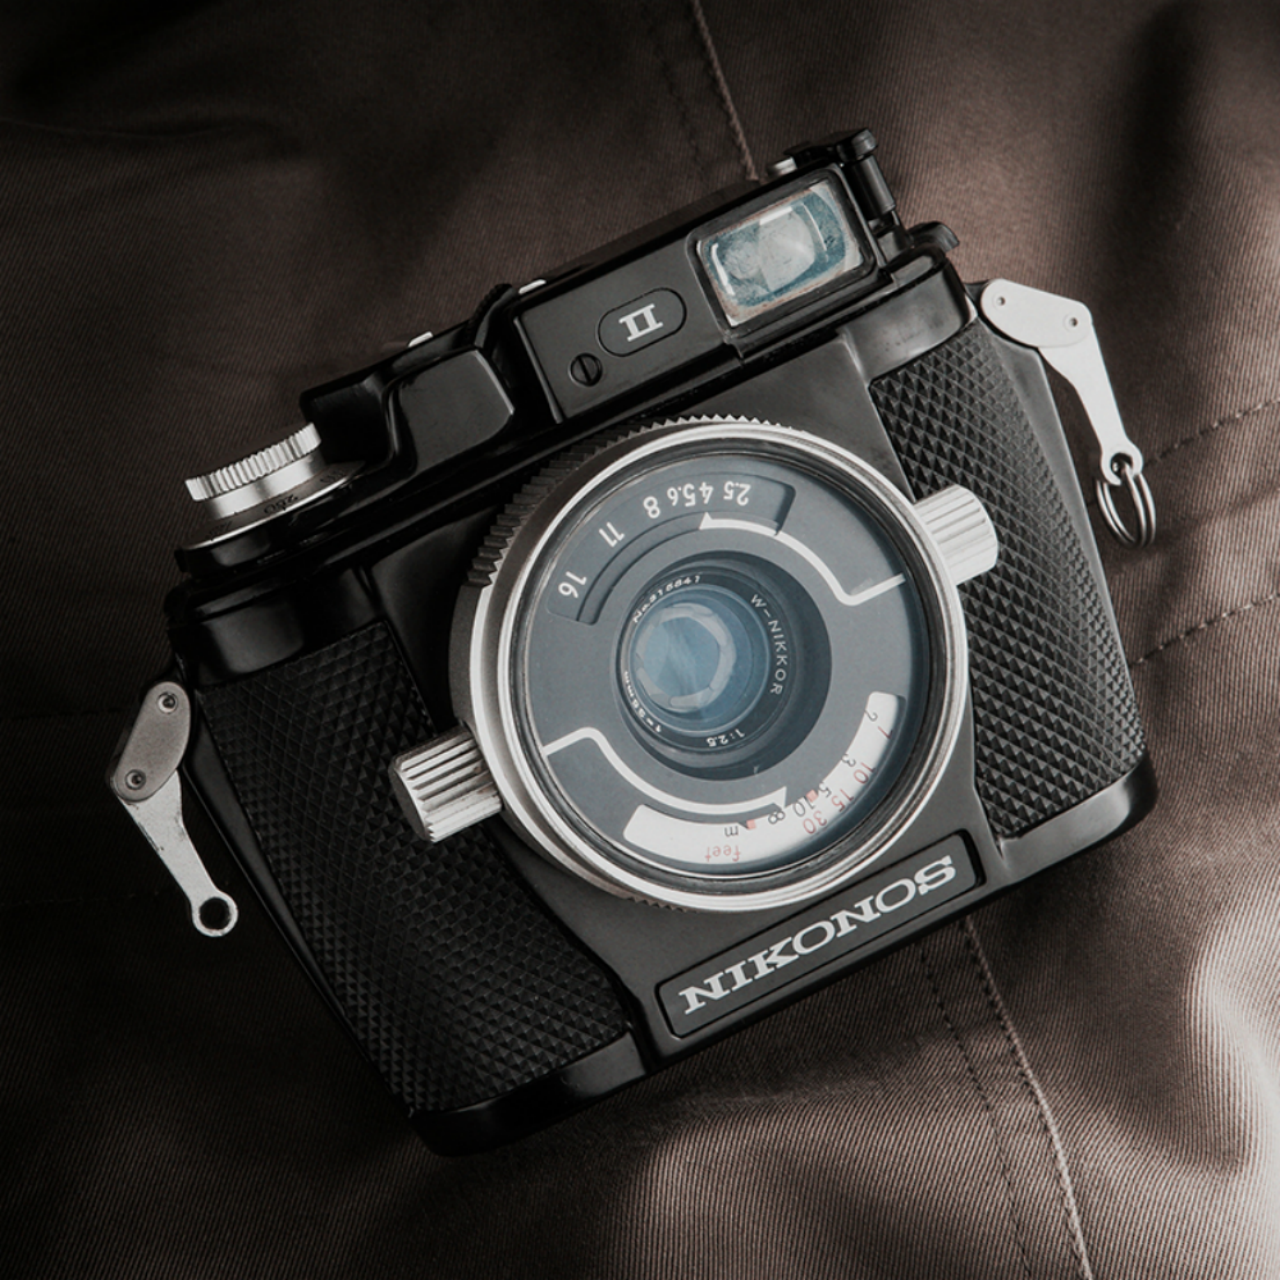 ニコン ニコノス 35mm f2.5 W-Nikkor レンズ 水中カメラ